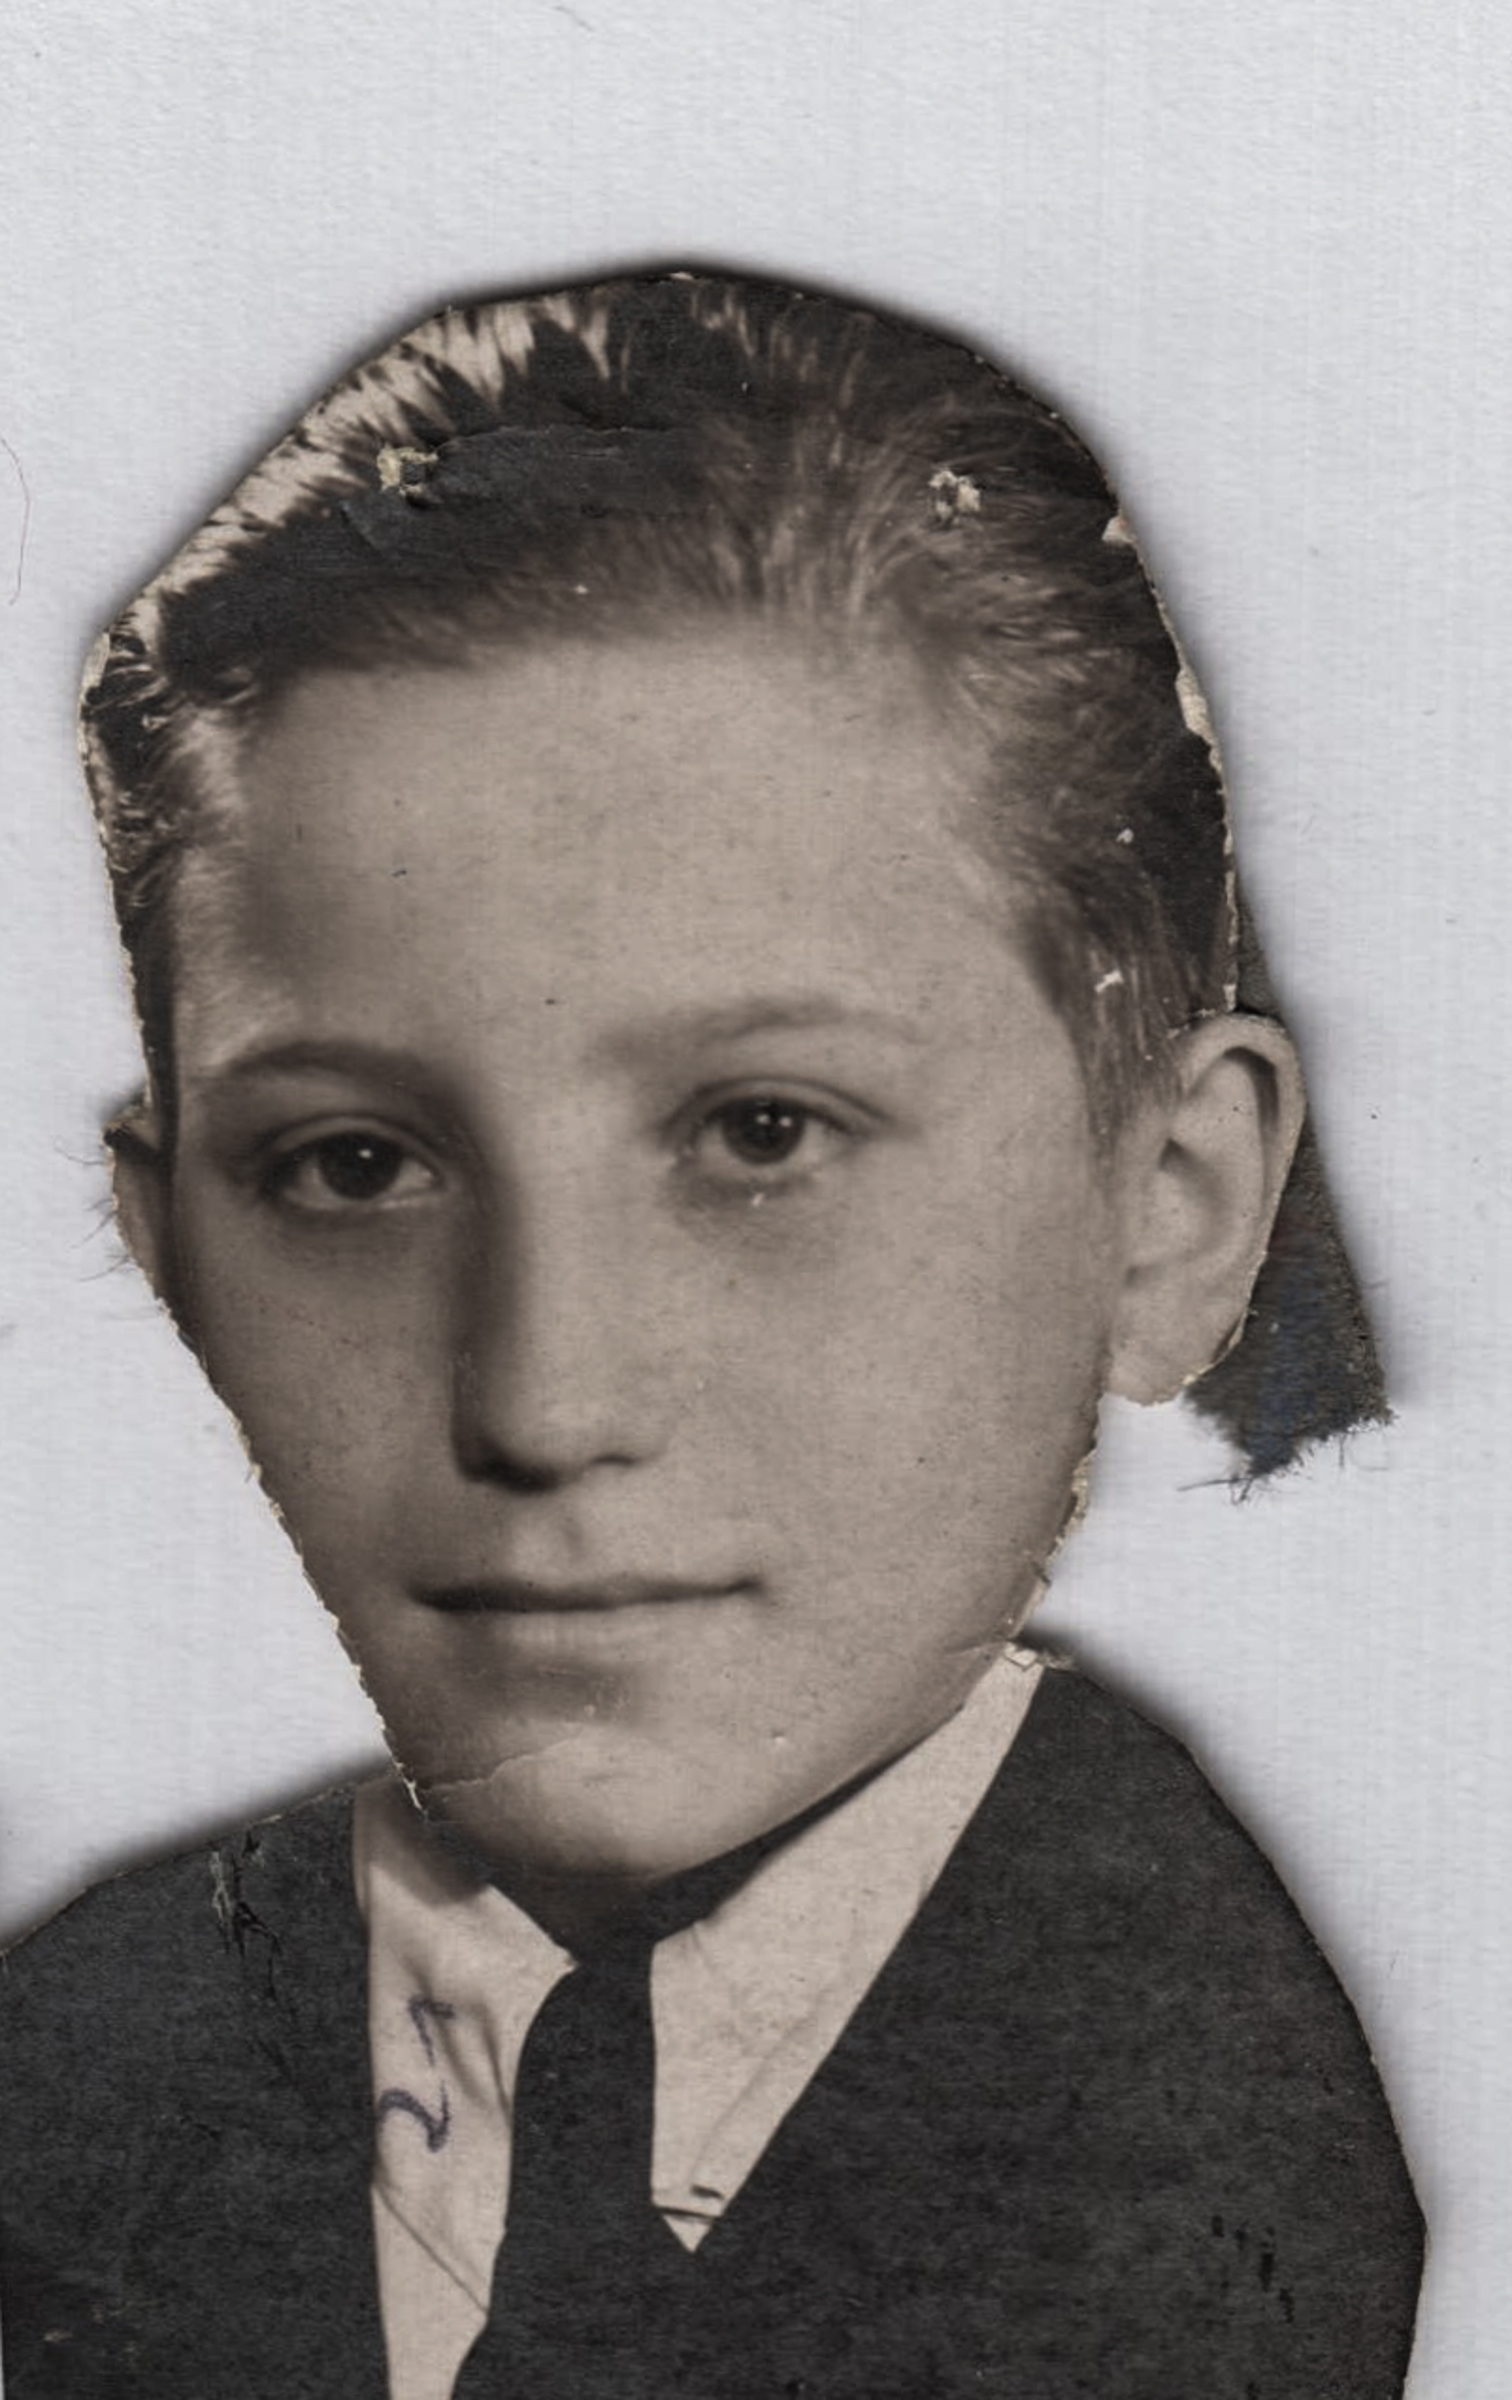 Alexander Speiser as a child around 1941/42